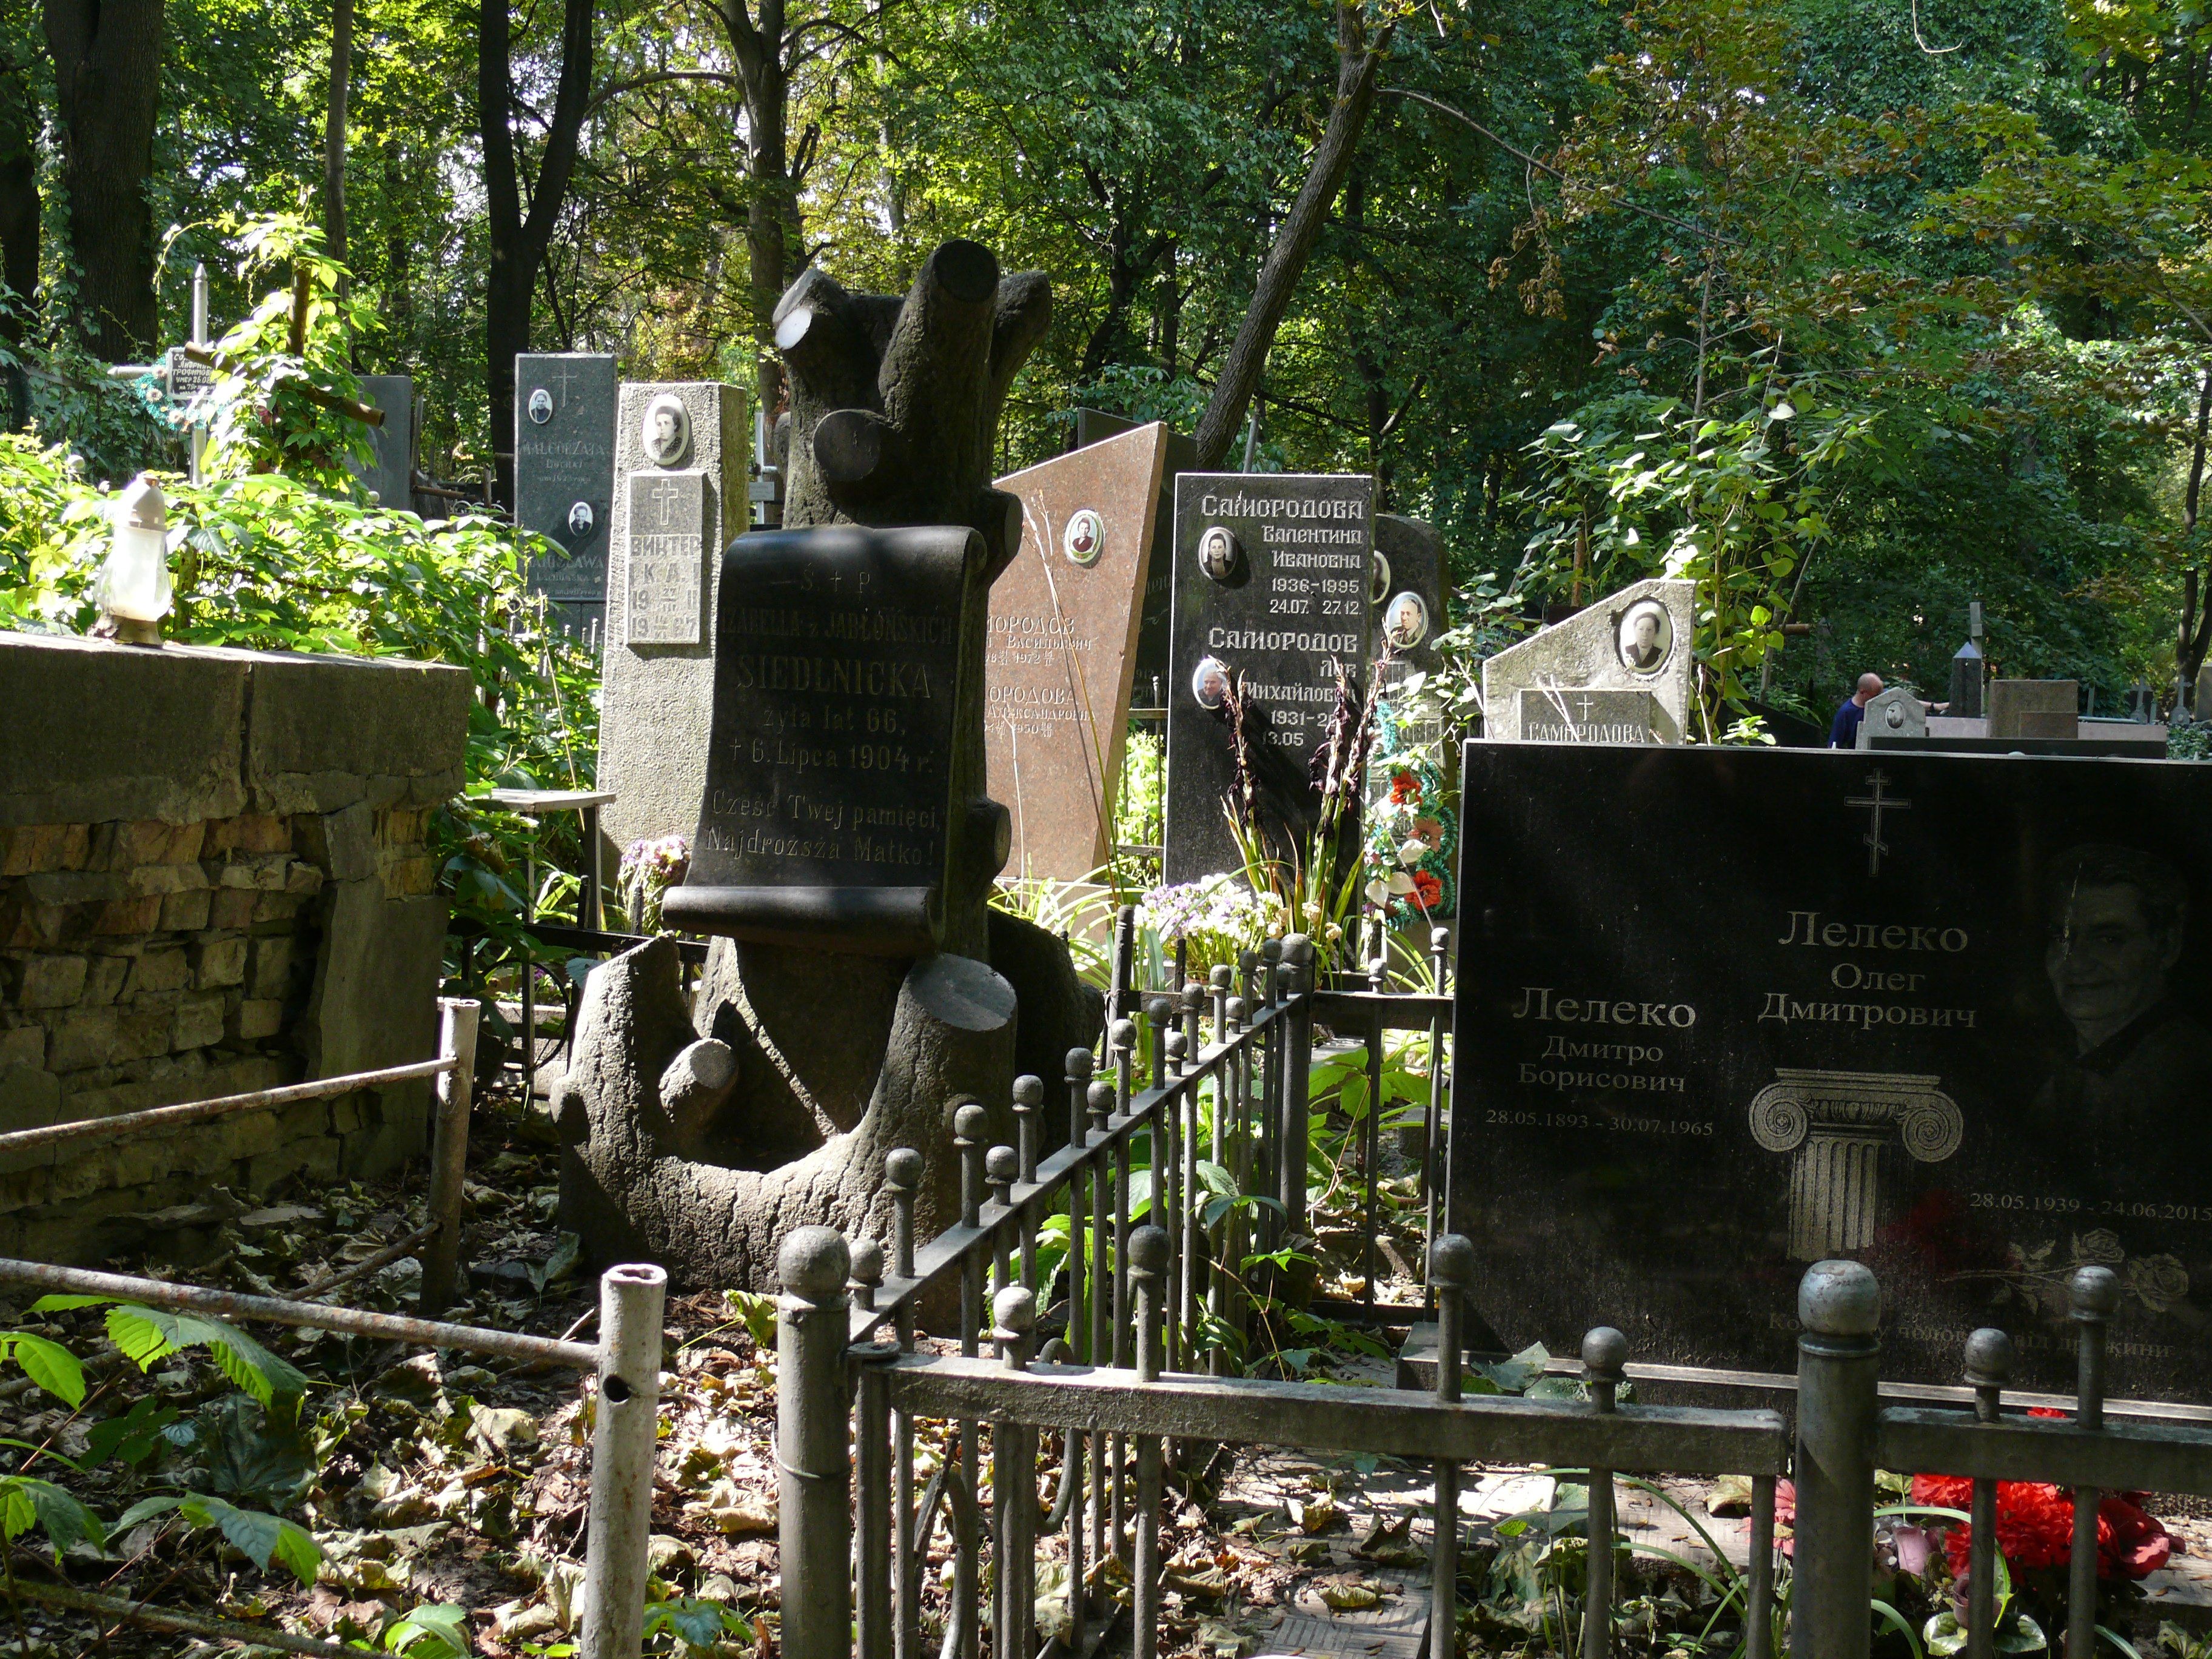 Tombstone of Izabella Siedlnitskaya, Baikal cemetery, Kyiv, as of 2021